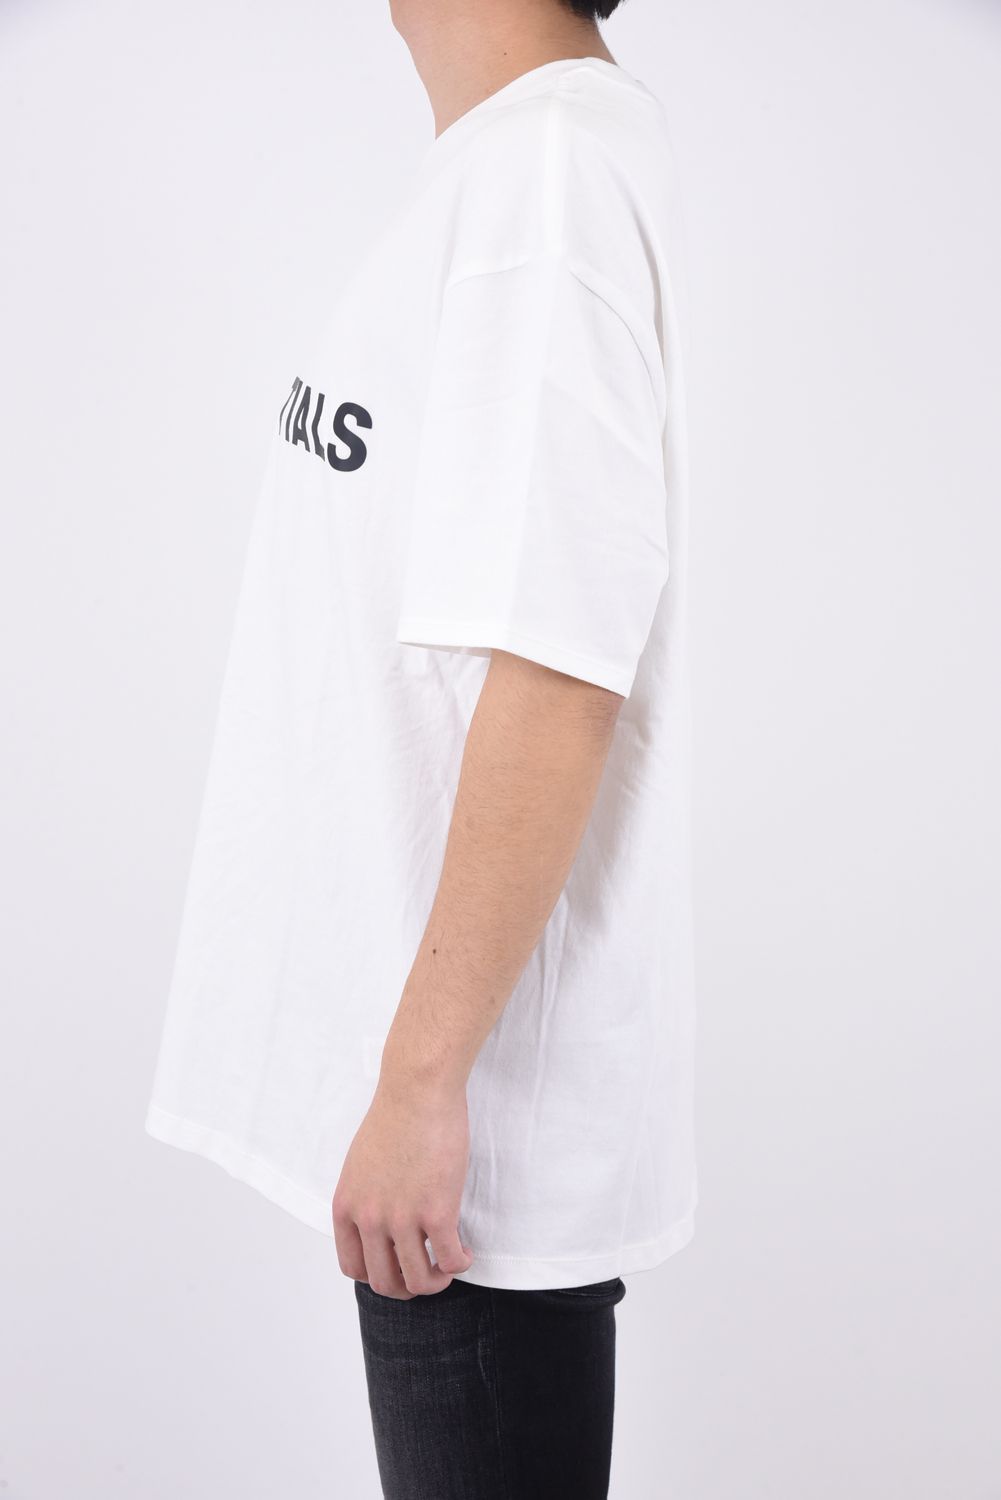 FOG エッセンシャルズ フロント 3Dロゴ 半袖 Tシャツ ローアンバー XL